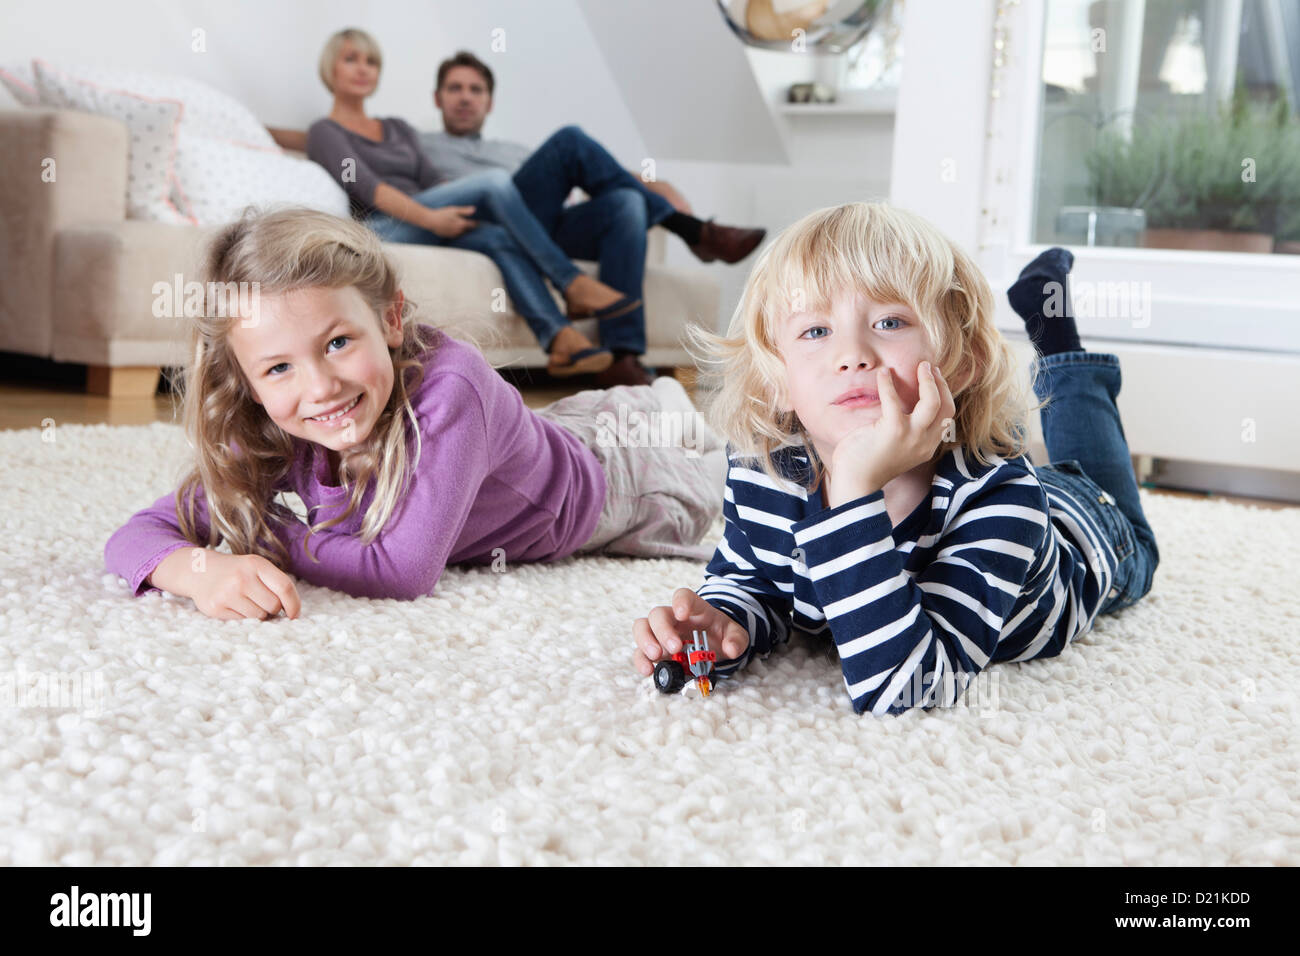 Deutschland, Bayern, München, jungen und Mädchen auf Boden liegend, Eltern sitzen der Couch im Hintergrund Stockfoto